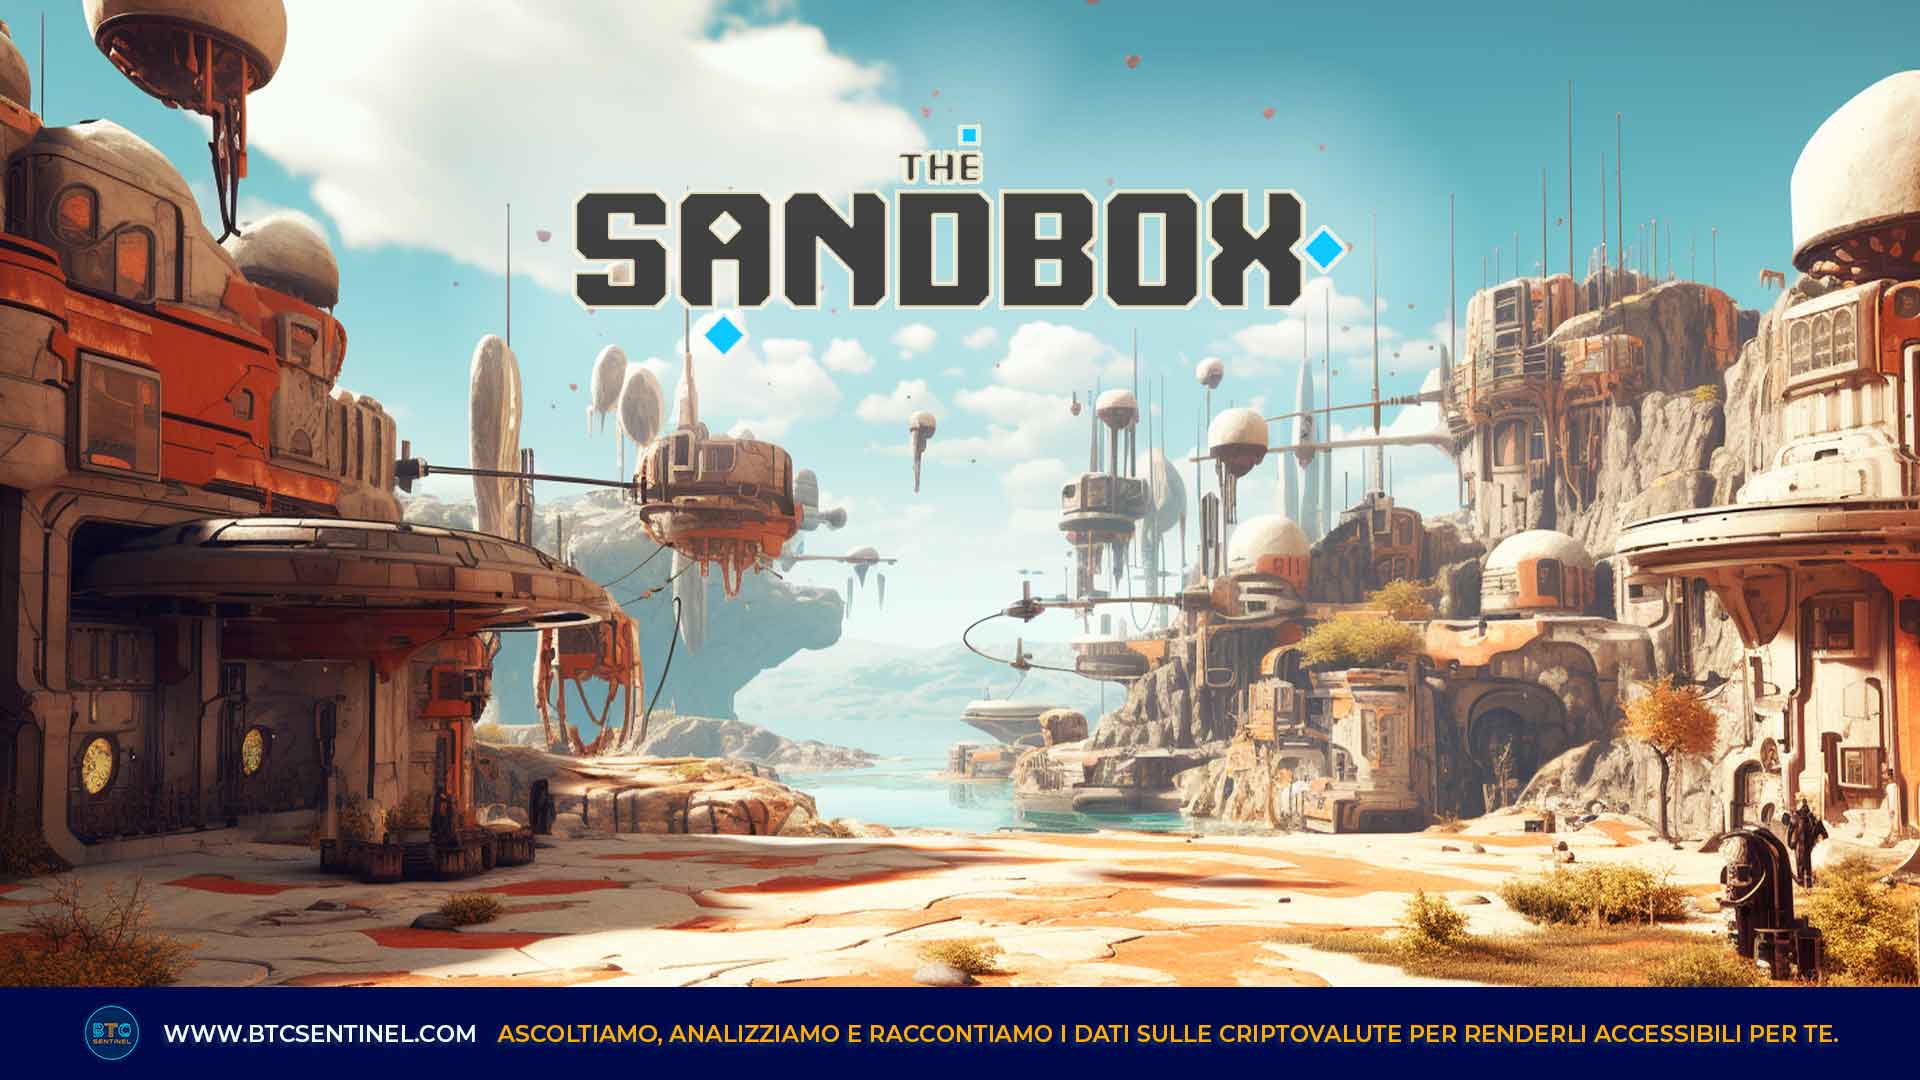 The Sandbox: un metaverso da esplorare, con NFT e crypto